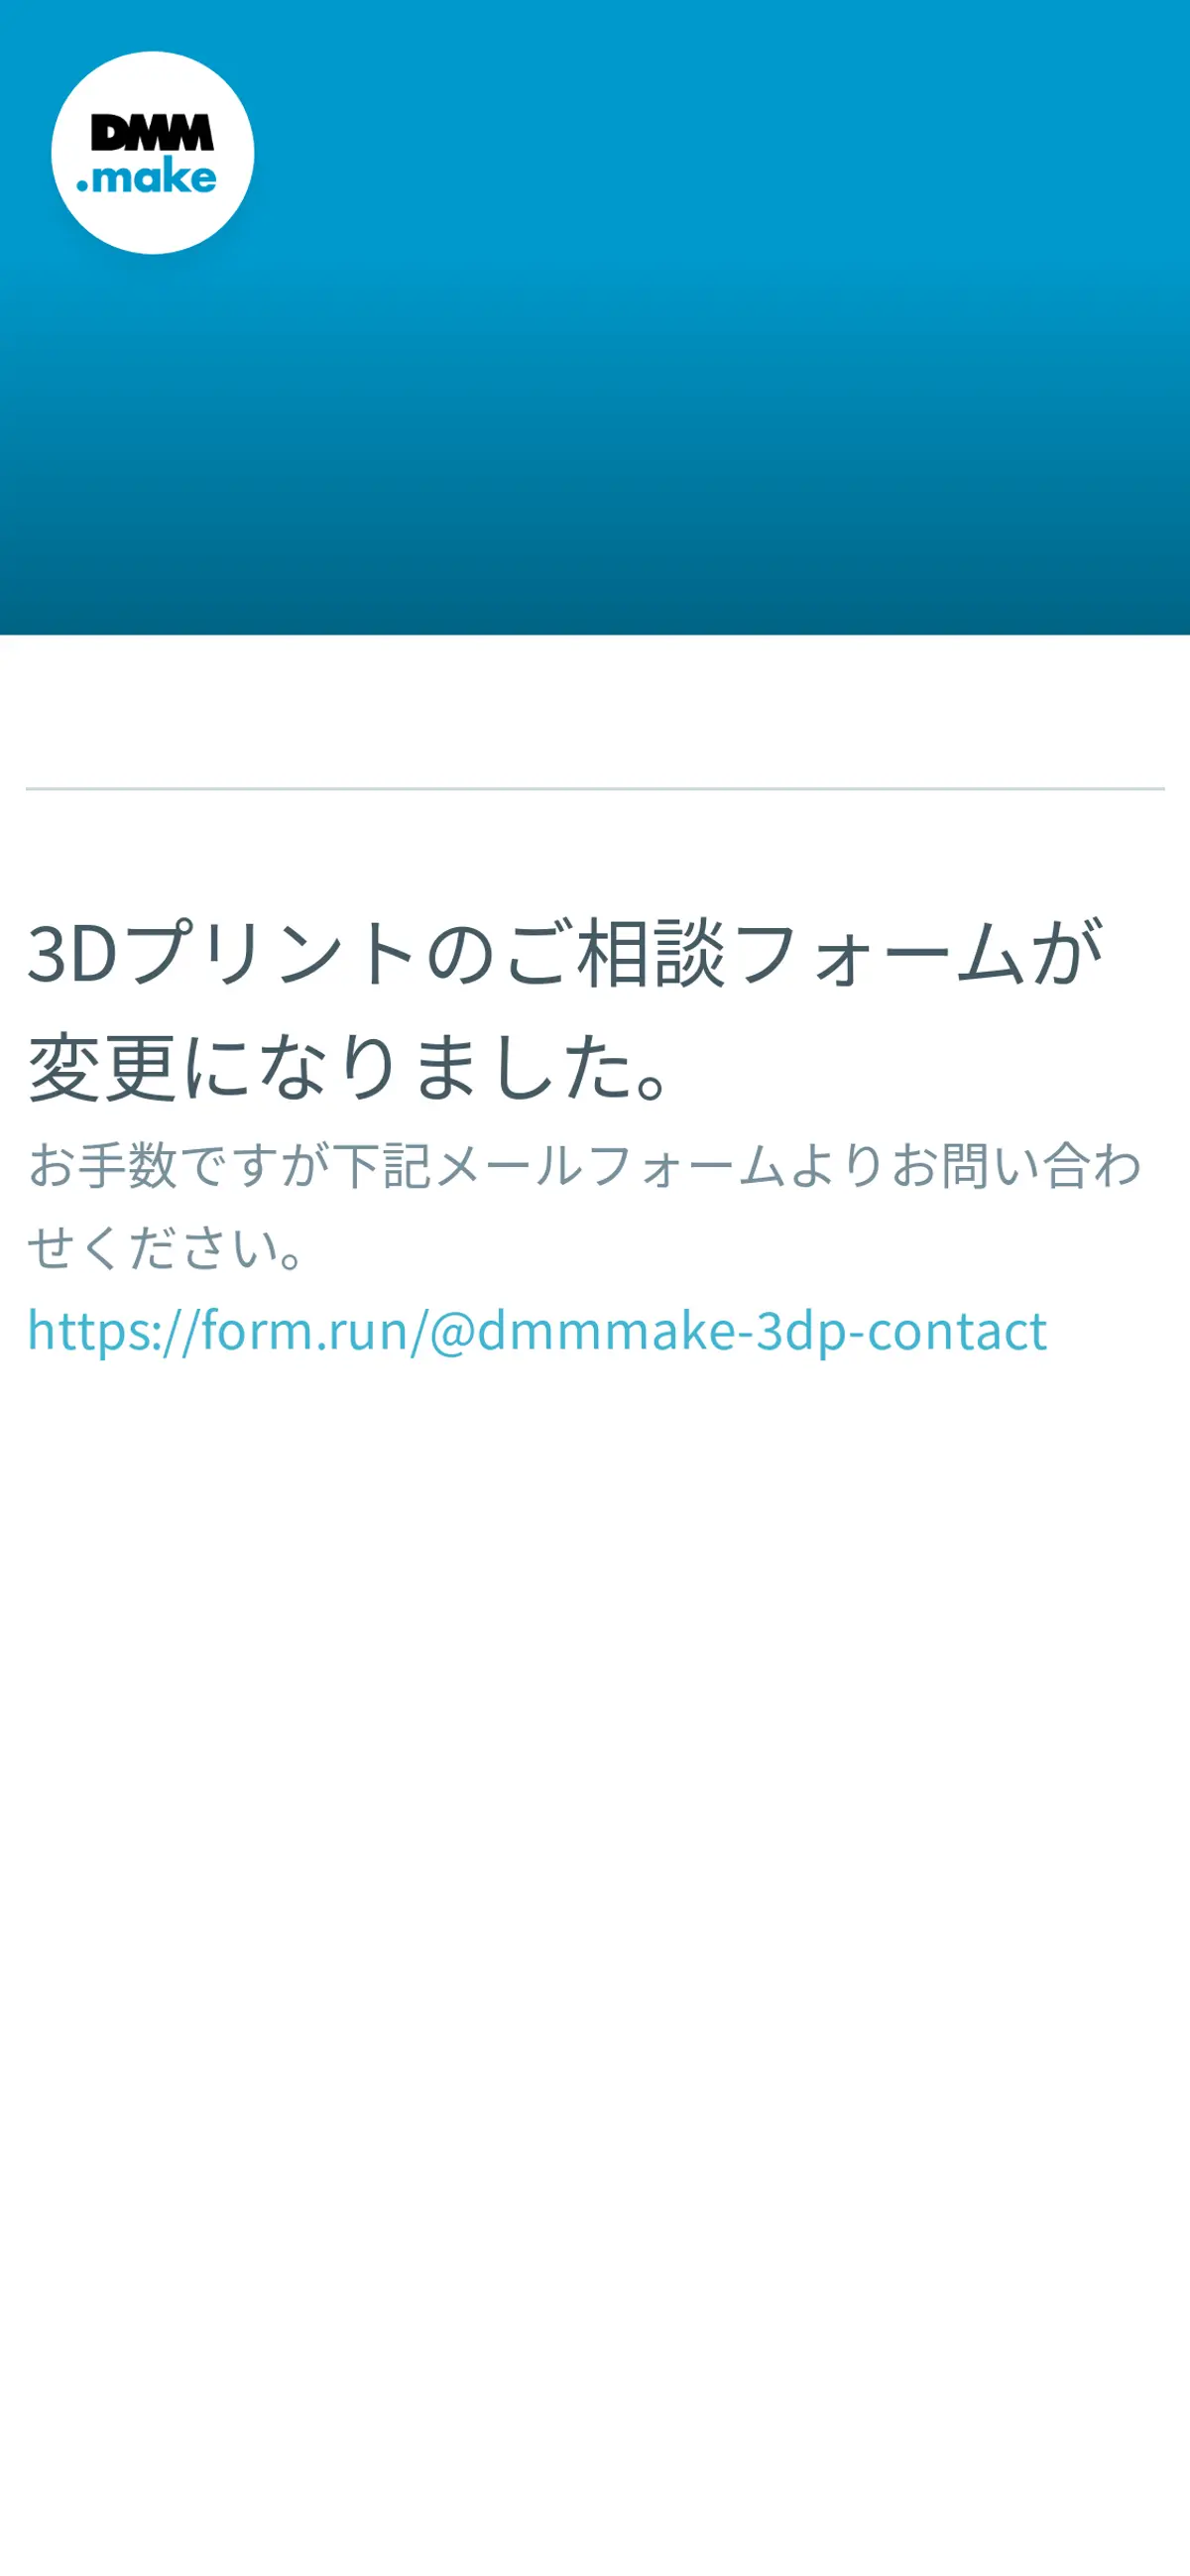 キャプチャ画面 会社名:DMM.com Groupプロジェクト名:DMM.make 3Dプリント 画面名:フォーム入力 デバイス名:SPカテゴリ:WEB・インターネットタグ:フォーム入力,SP